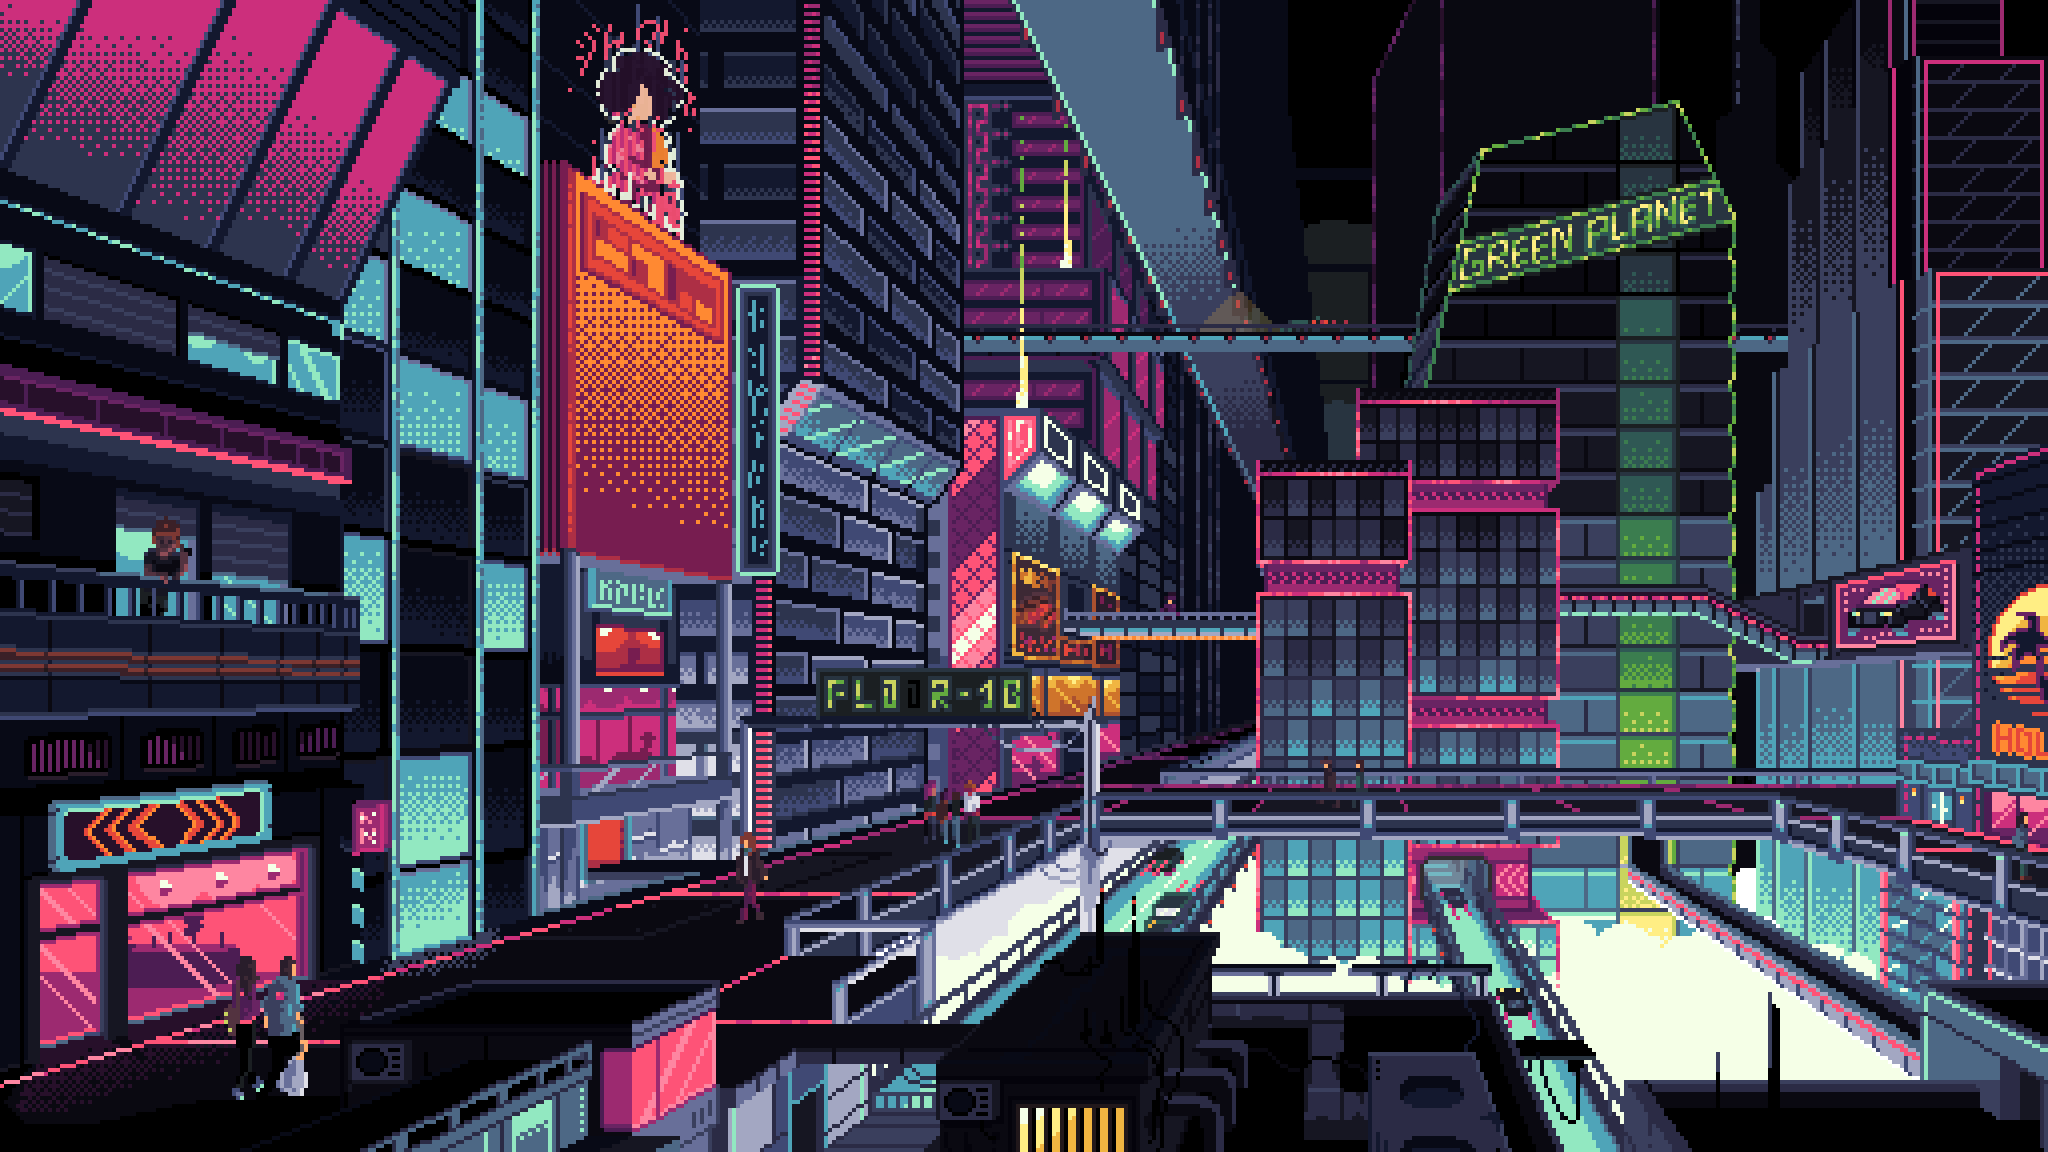 Cyberpunk City Pixel Art Wallpaper Hd Artist 4k Wallpapers Images And